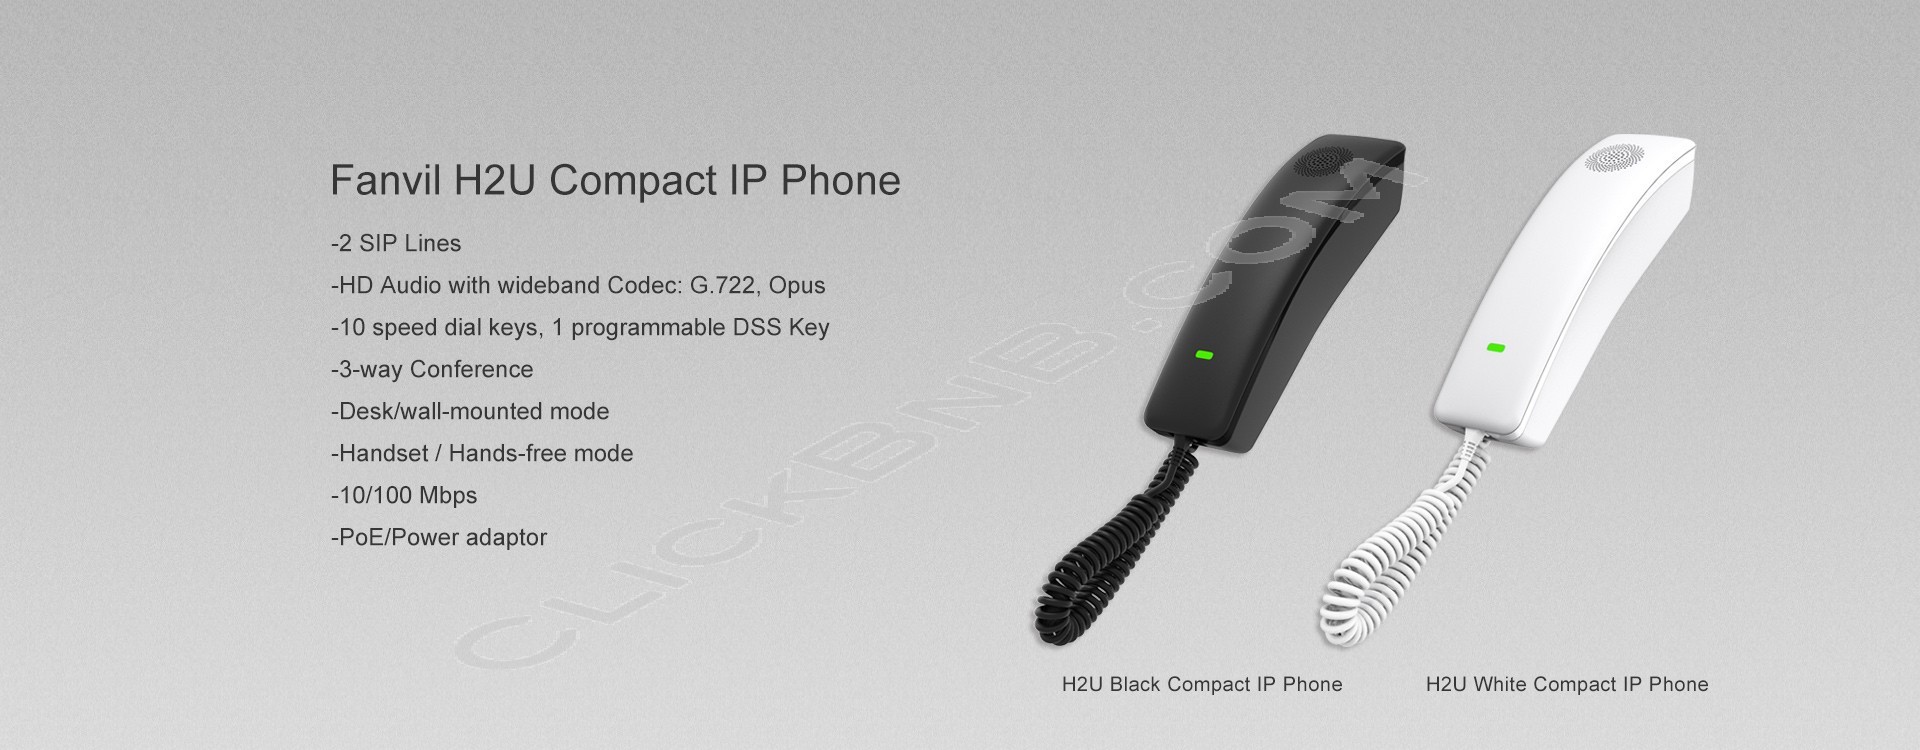 Fanvil H2U - Hotel Compact IP Phone